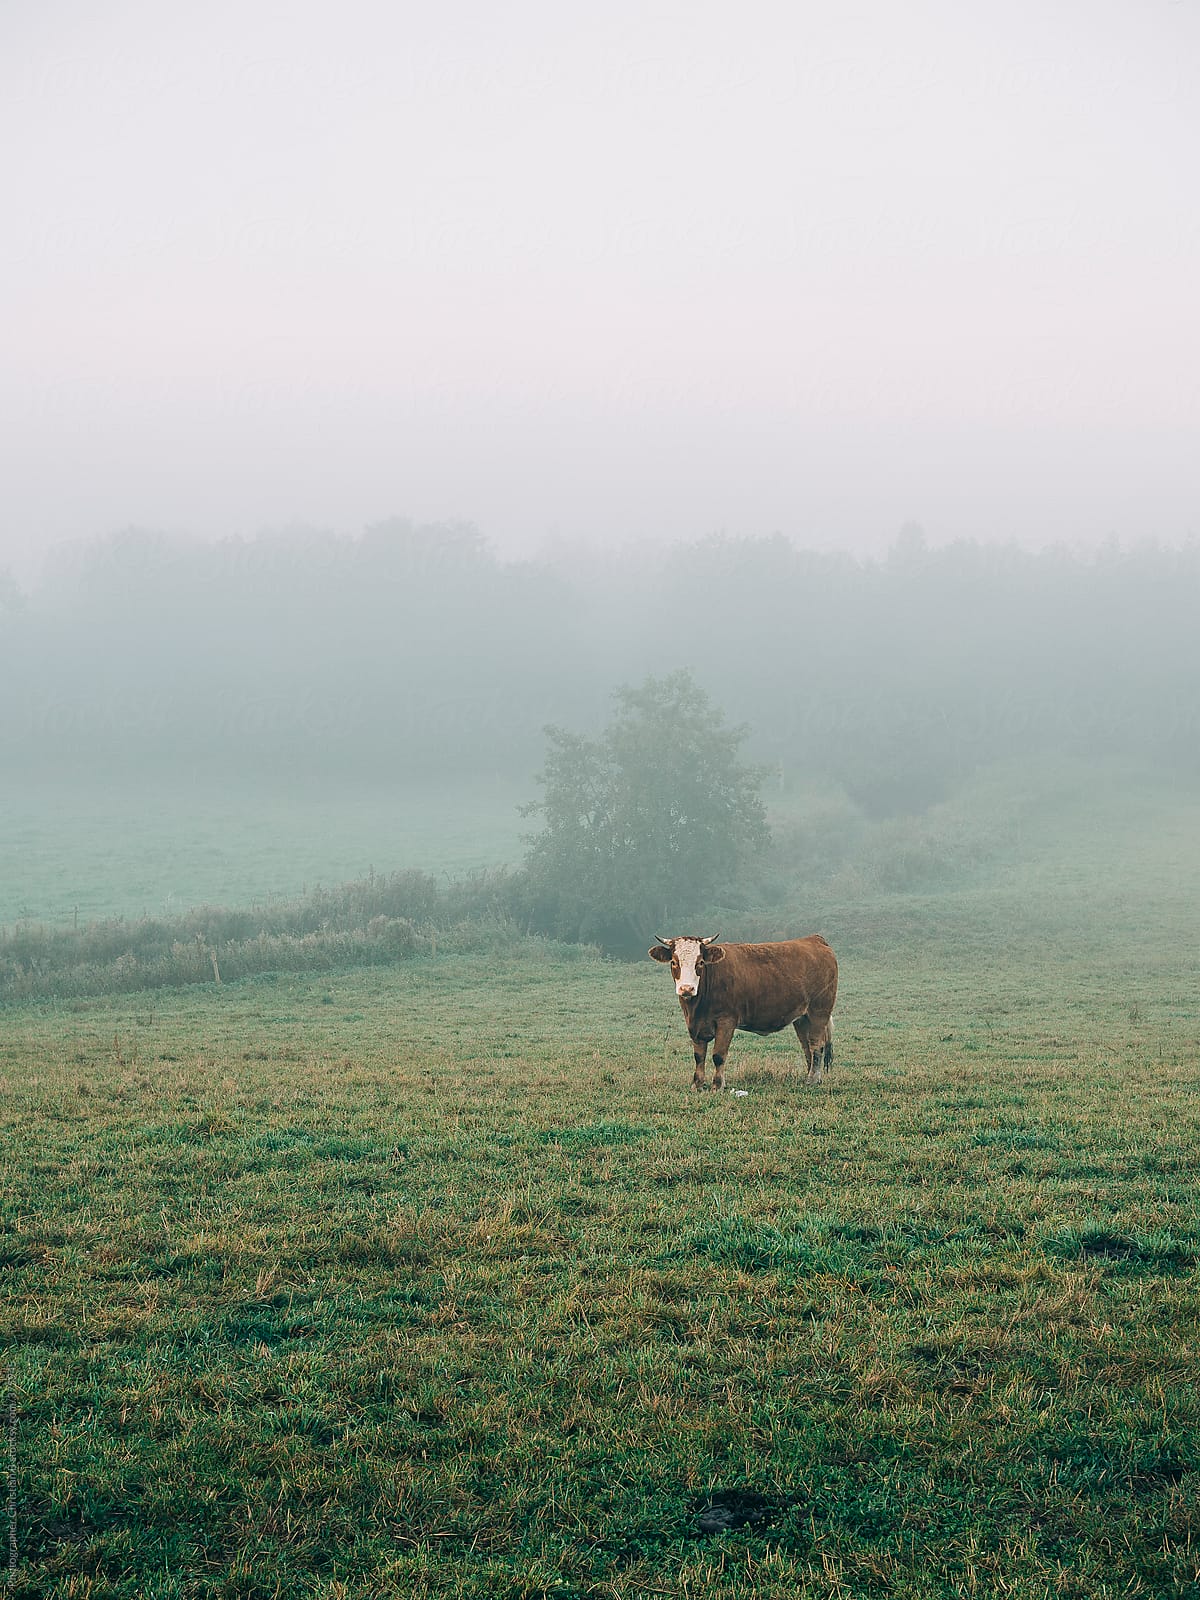 Muuuuuhhhh. Cows in the mist.